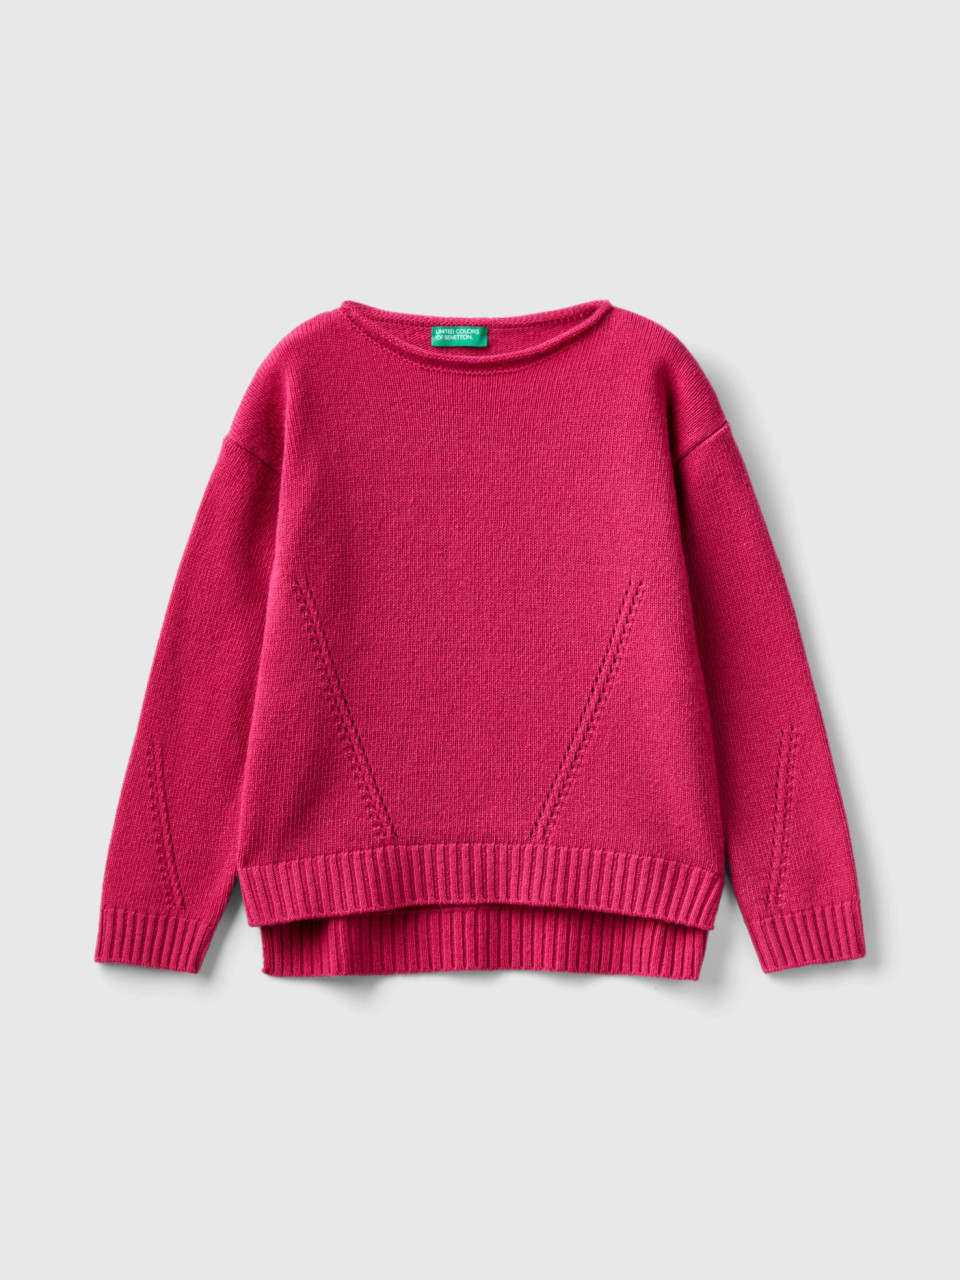 Benetton, Knit Sweater With Playful Stitching, Cyclamen, Kids